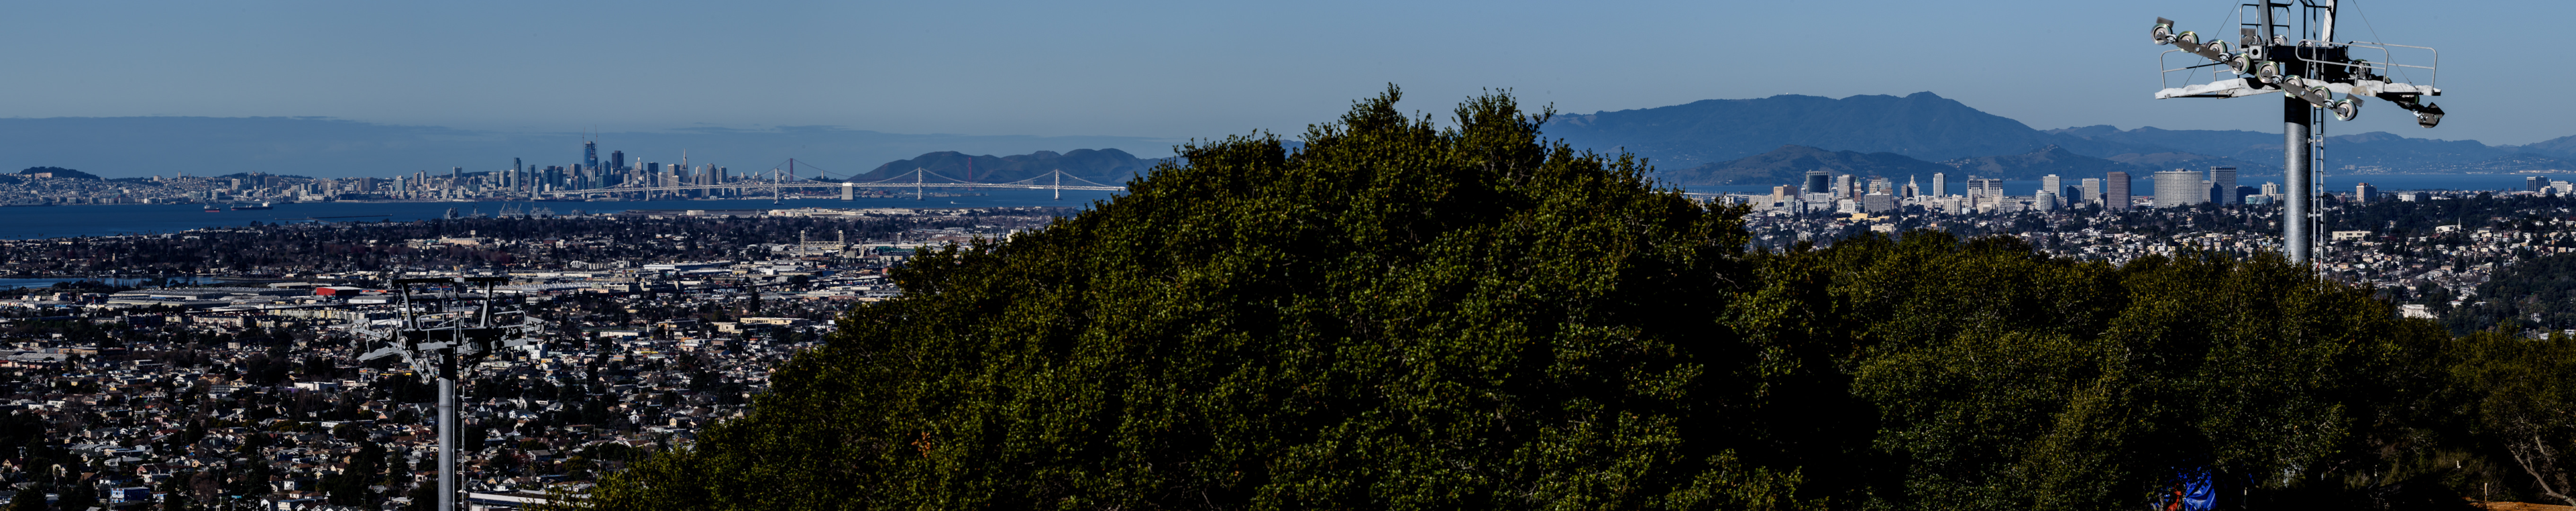 Bison Overlooks udsigt over Oakland by, Bay Bridge og San Francisco i baggrunden